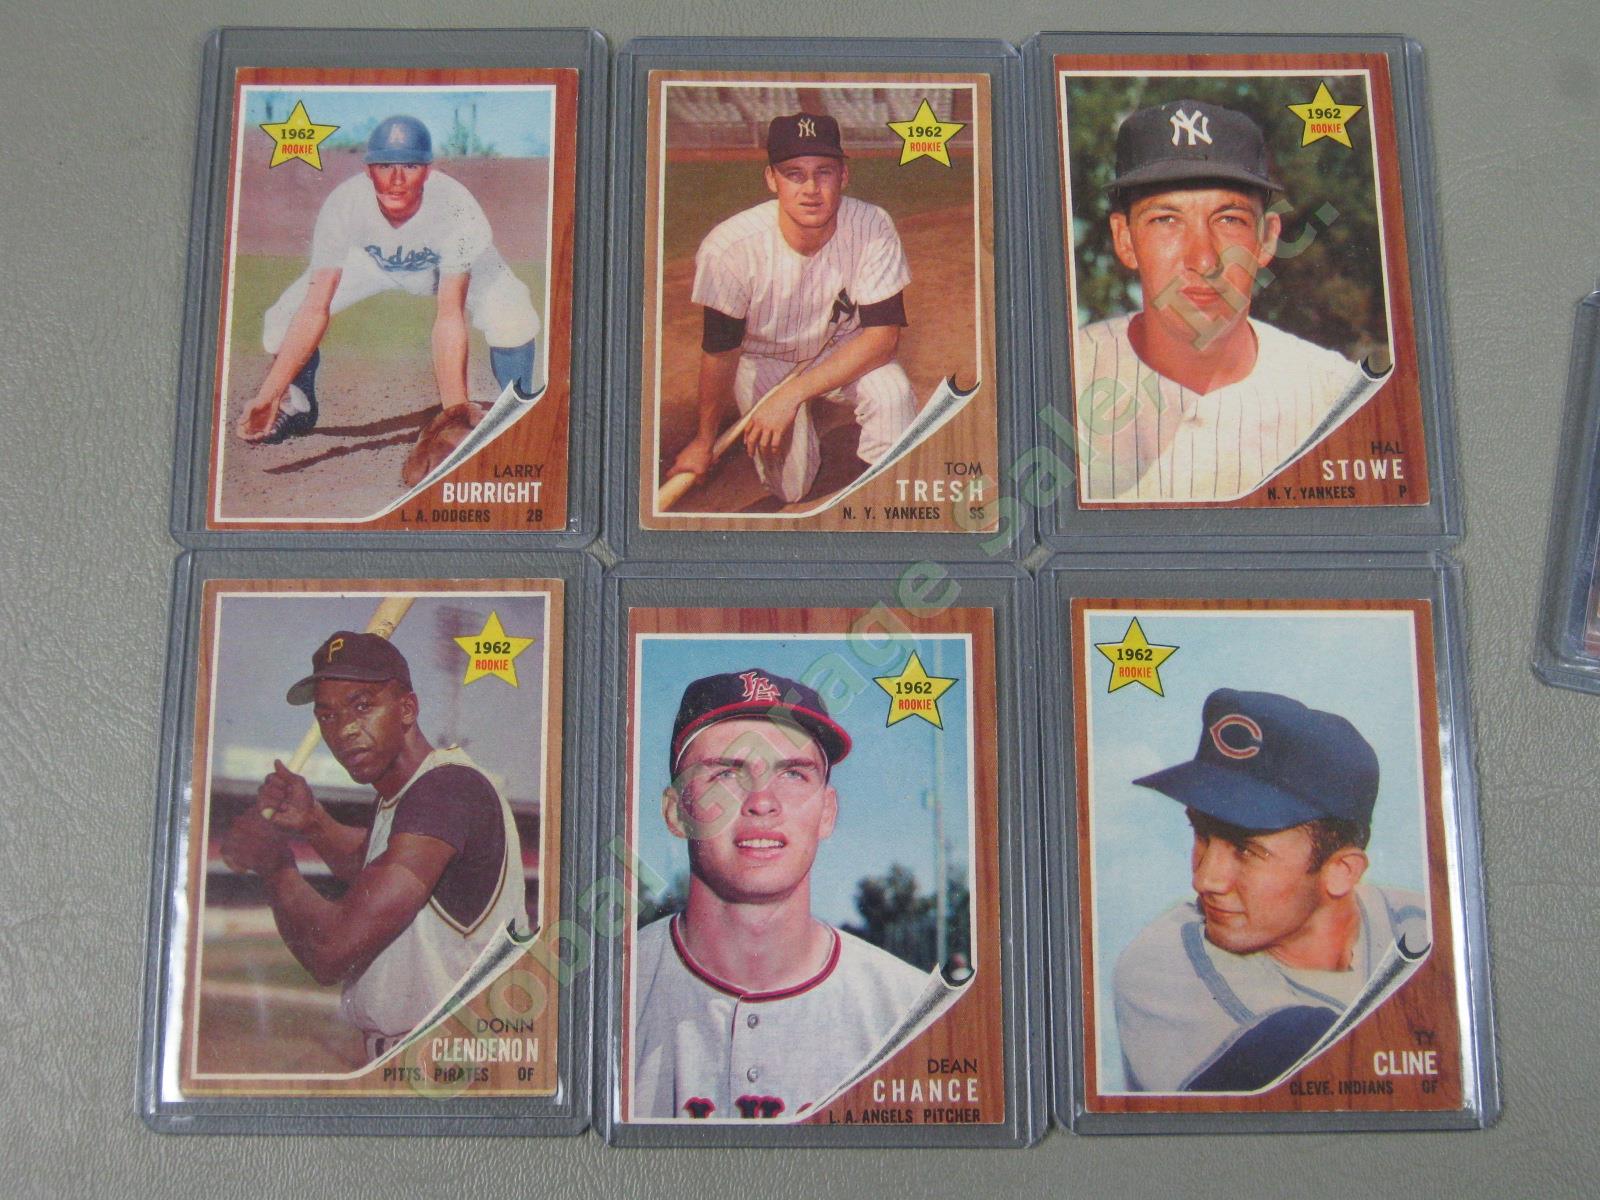 160 Vtg 1961 1962 1963 Topps Baseball Card Lot w/ RBI Home Run Leaders + VG-EX 5